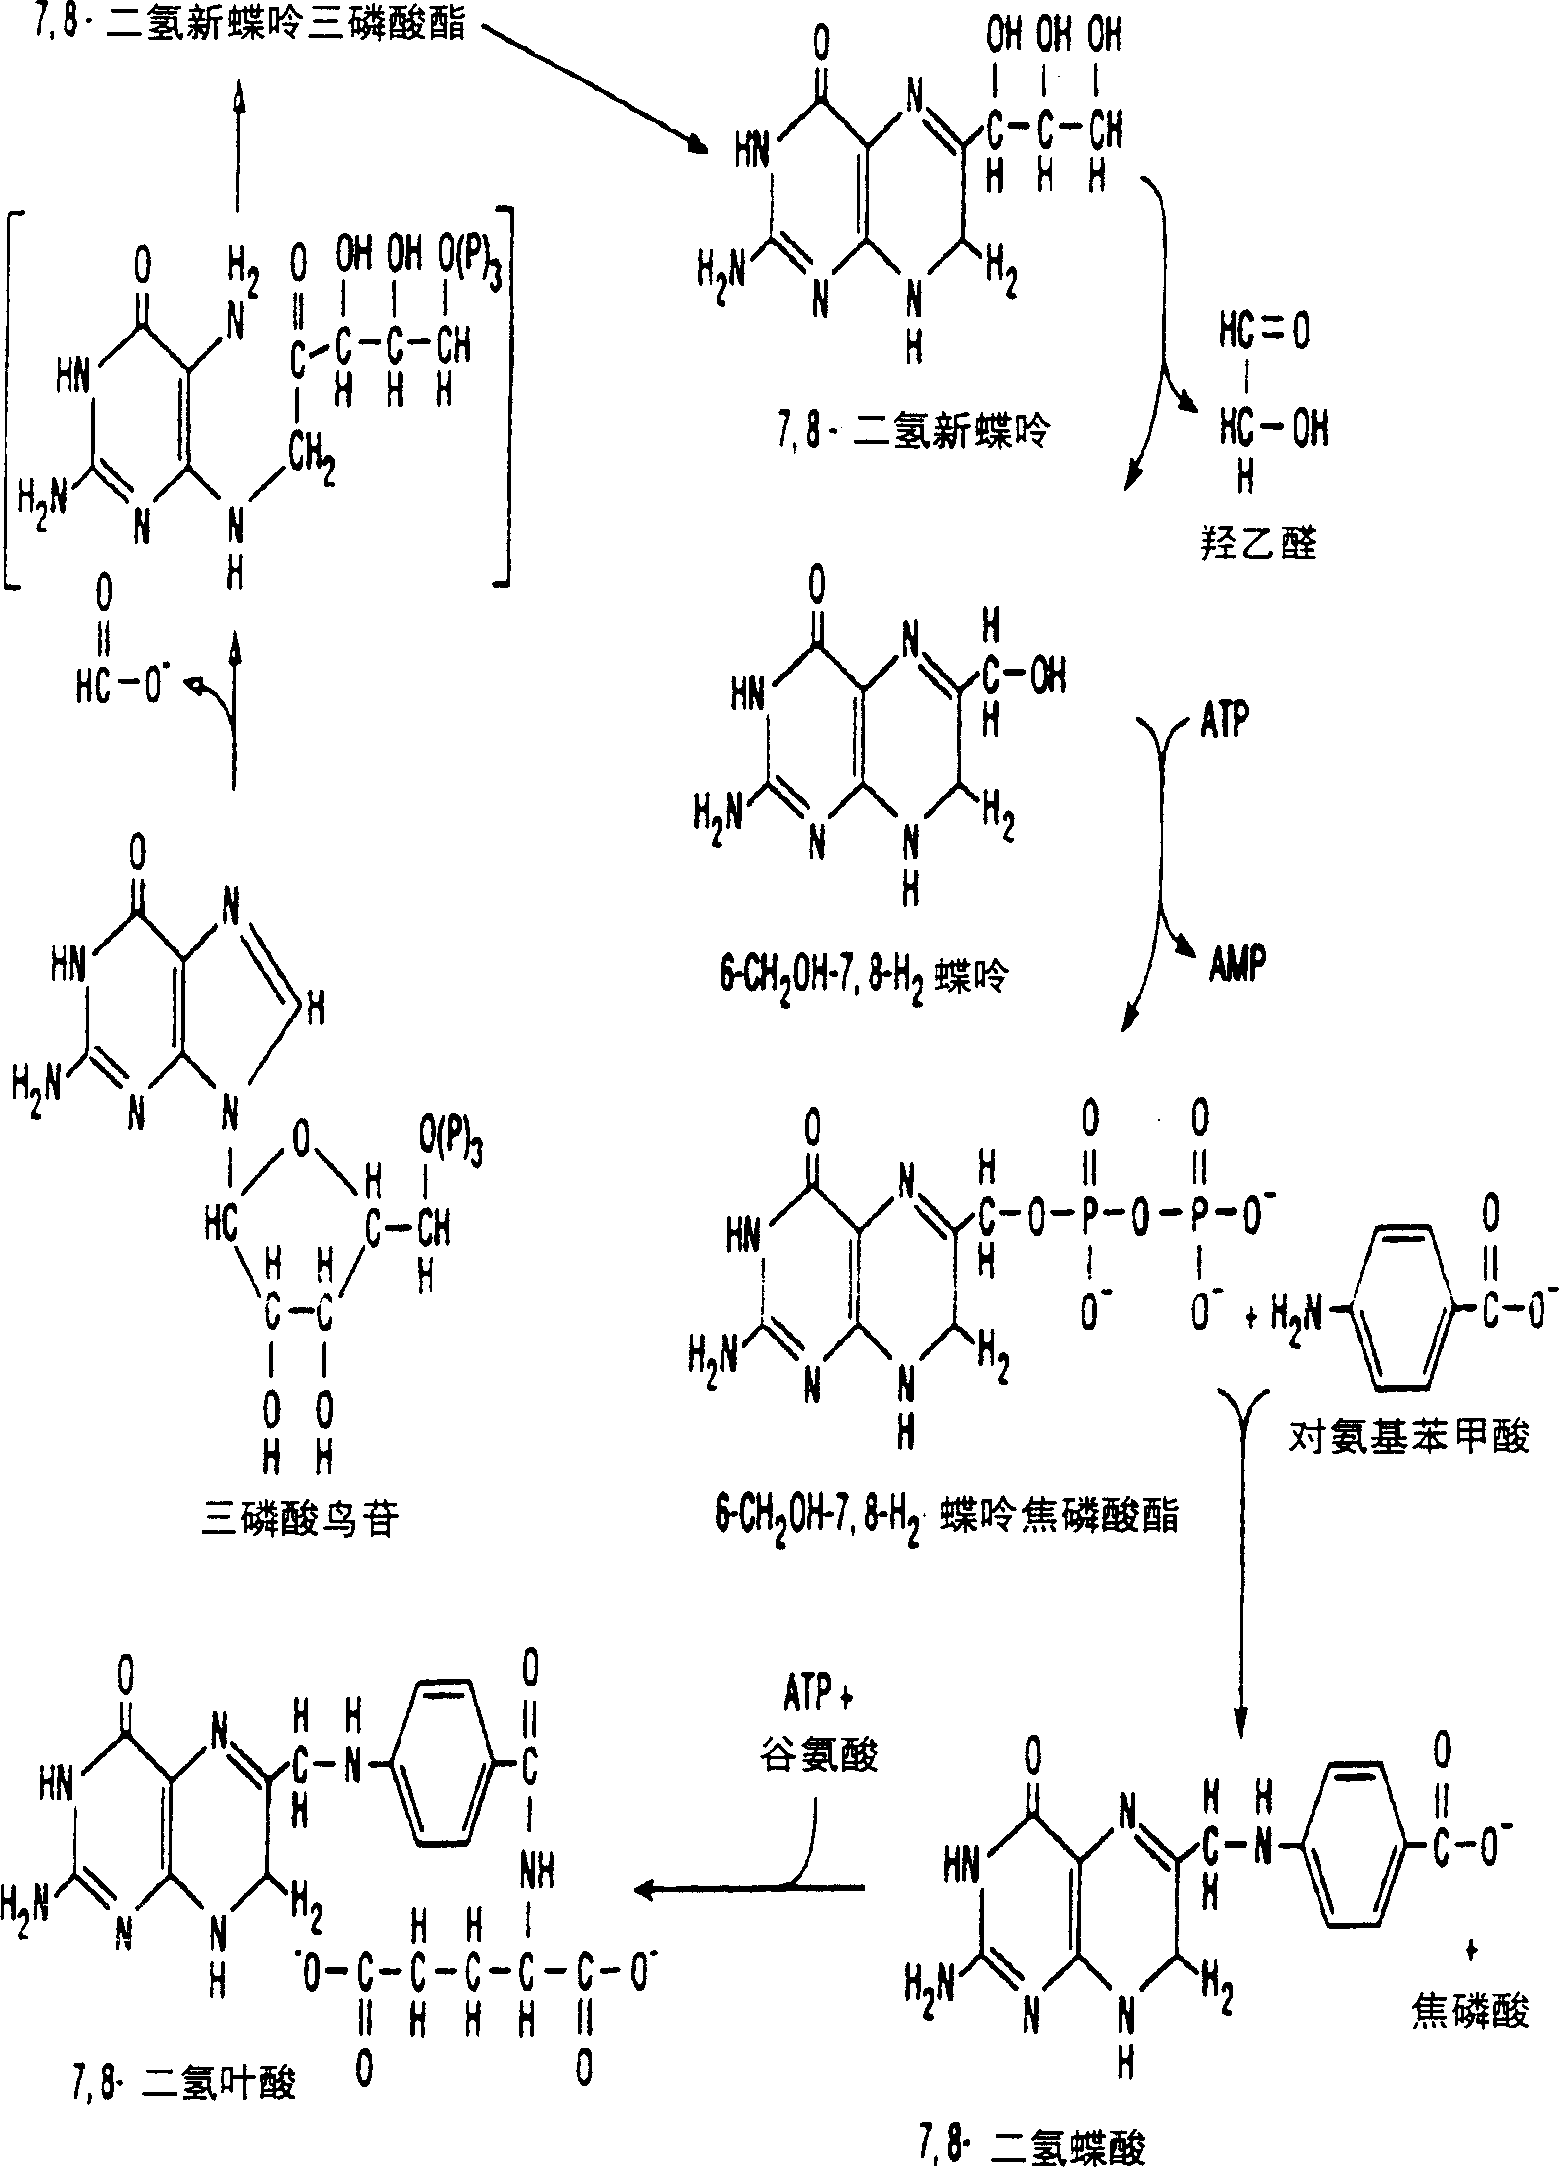 Production of bioarailable folic acid